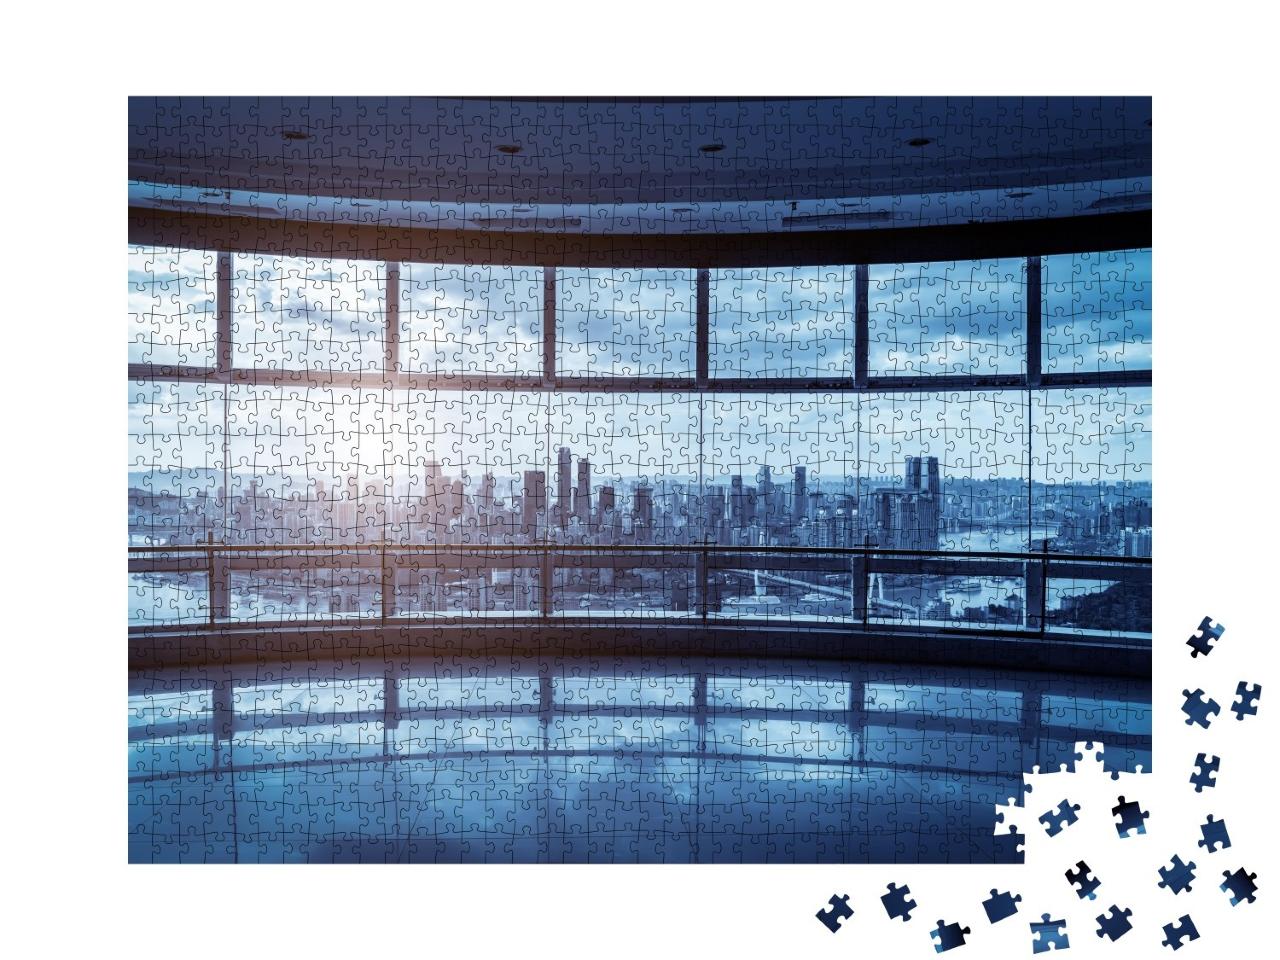 Puzzle de 1000 pièces « Immeuble de bureaux en verre avec silhouette urbaine »